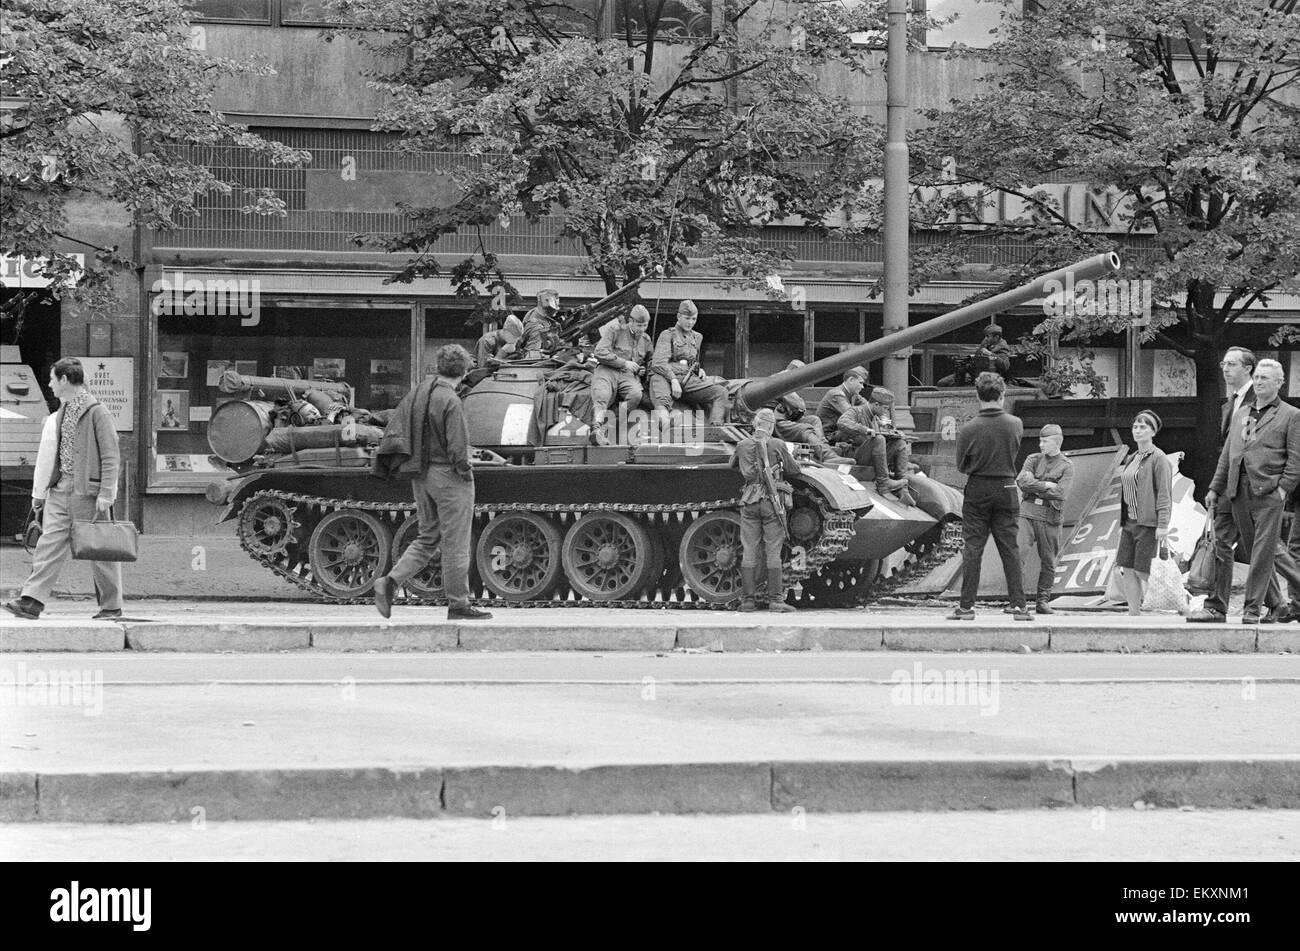 Praga, Cecoslovacchia. La Primavera di Praga, un periodo di liberalizzazione politica in Cecoslovacchia durante l'epoca del suo dominio da parte dell'Unione Sovietica dopo la Seconda Guerra Mondiale. Agosto 1968. Foto Stock